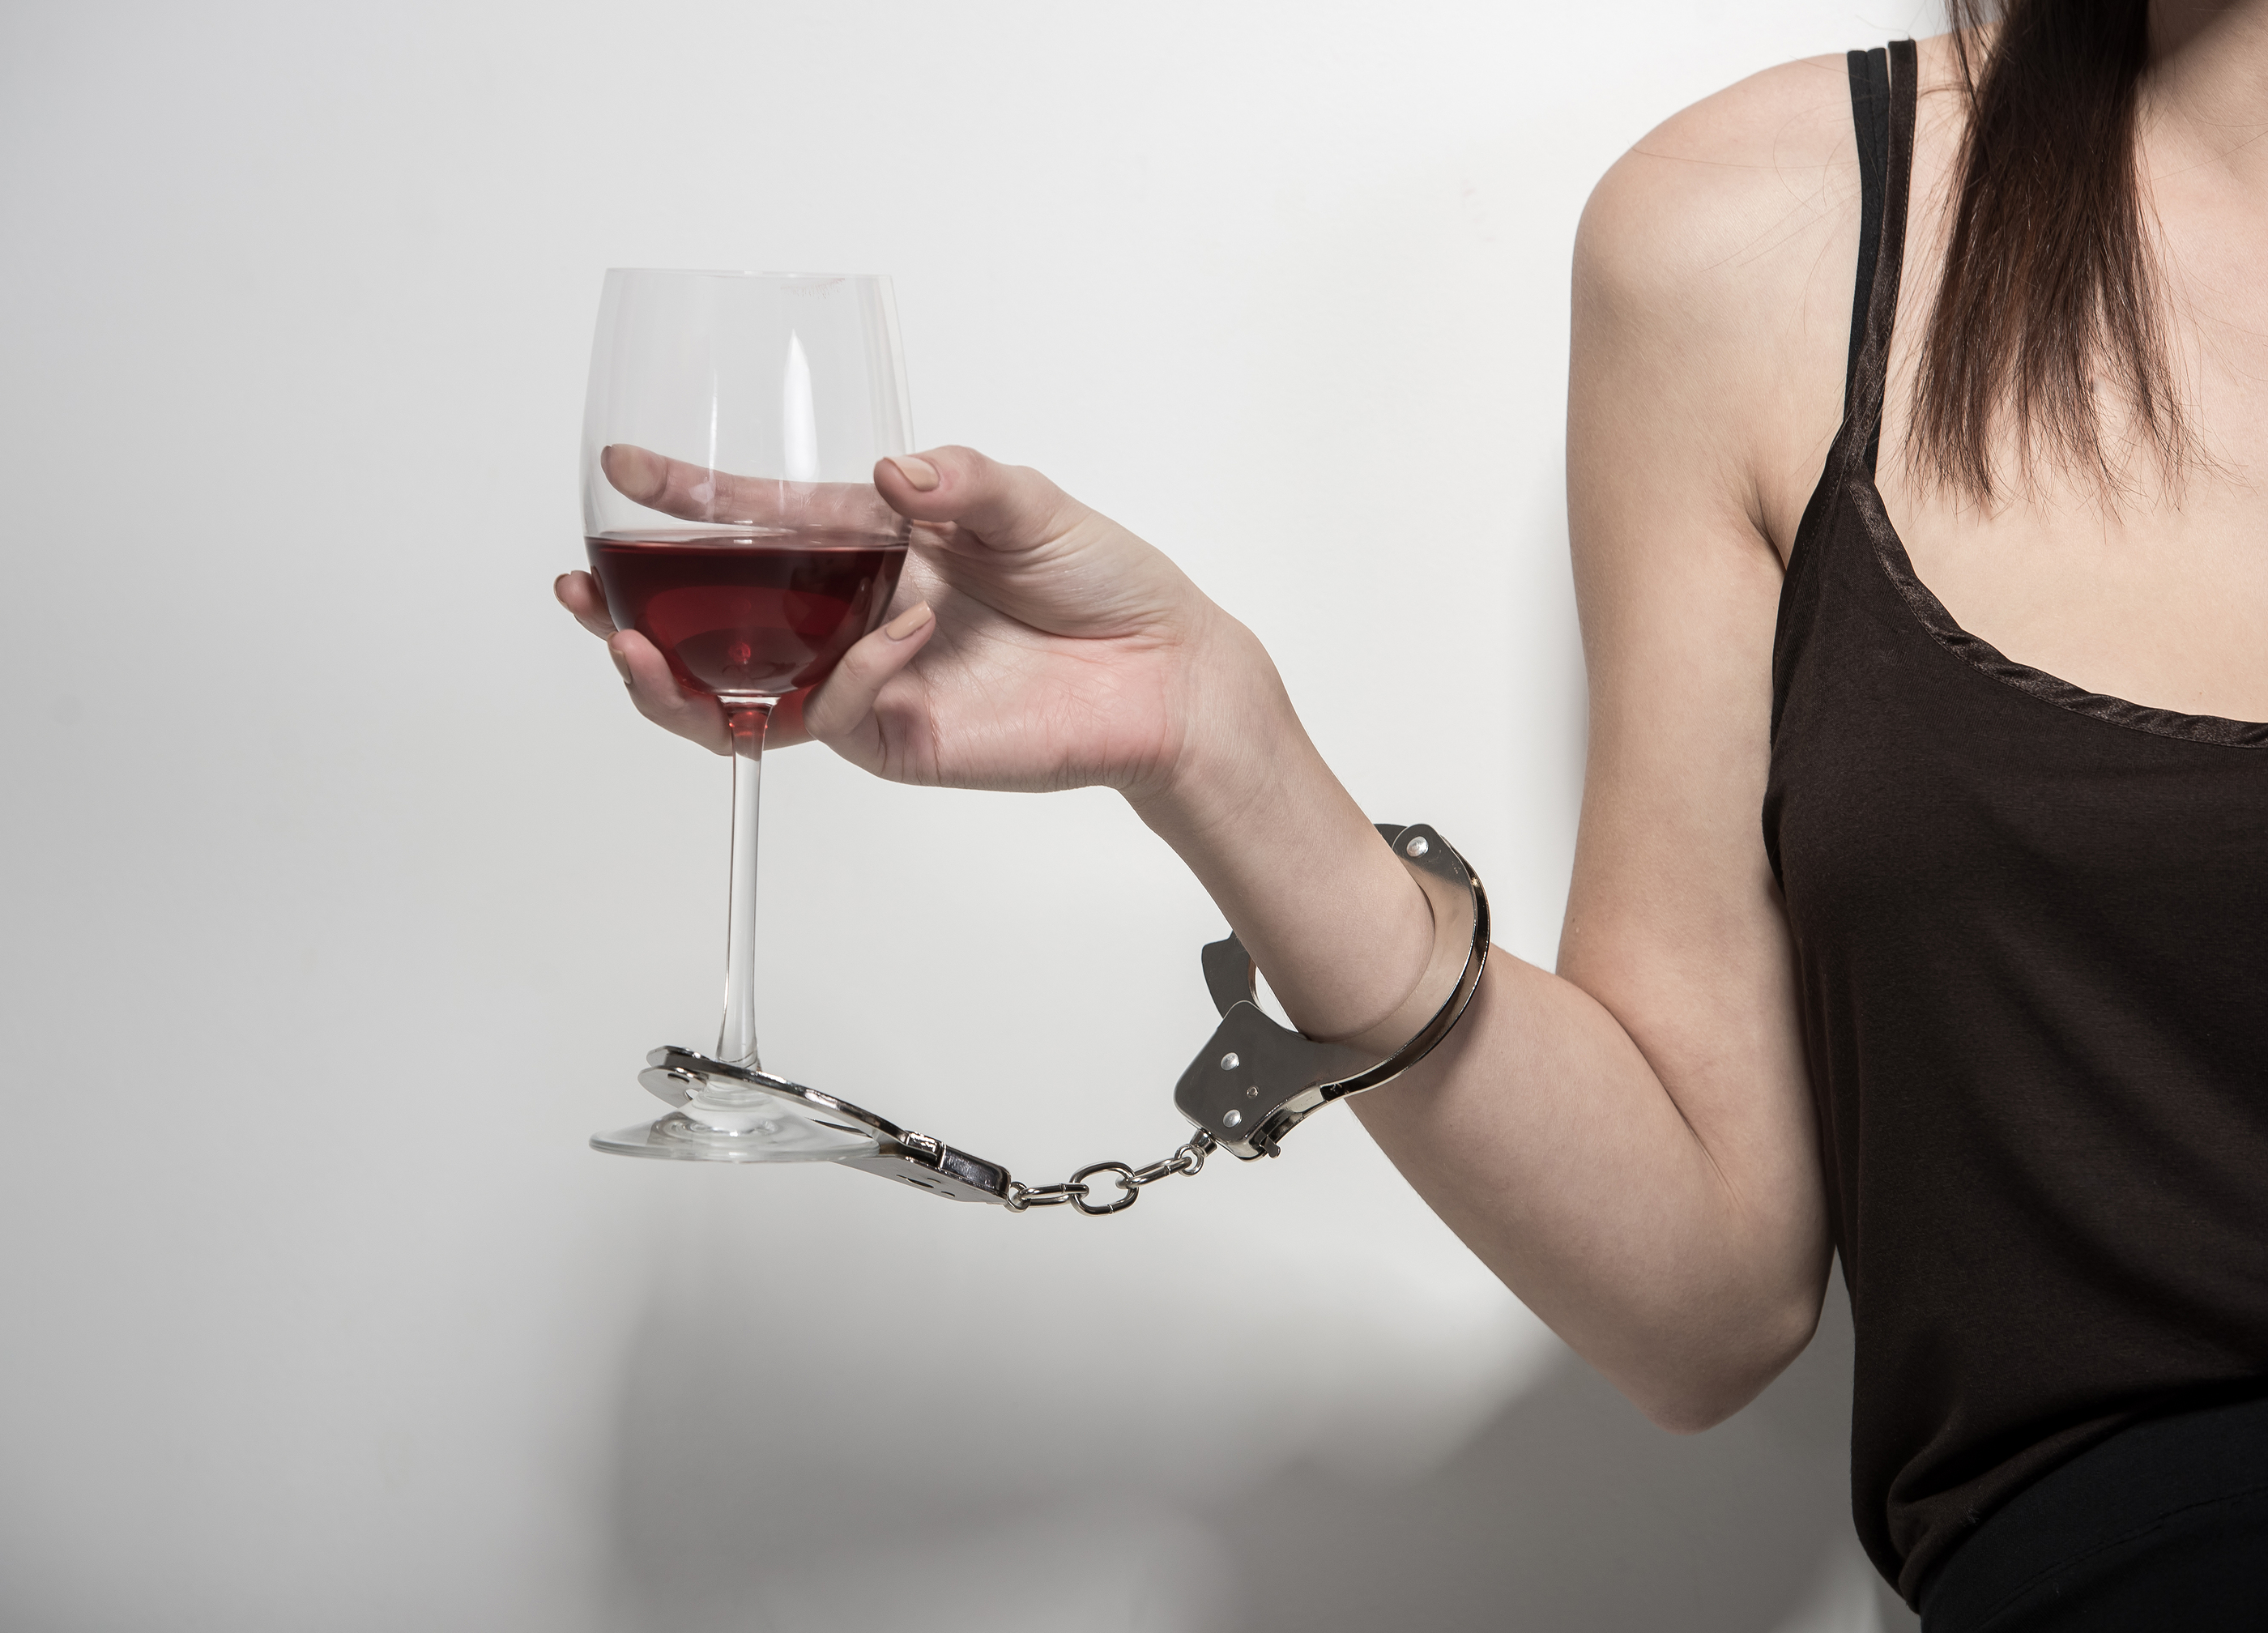 Снижение тяги к алкоголю. Алкоголизм. Алкогольная зависимость. Женщина и алкоголь.